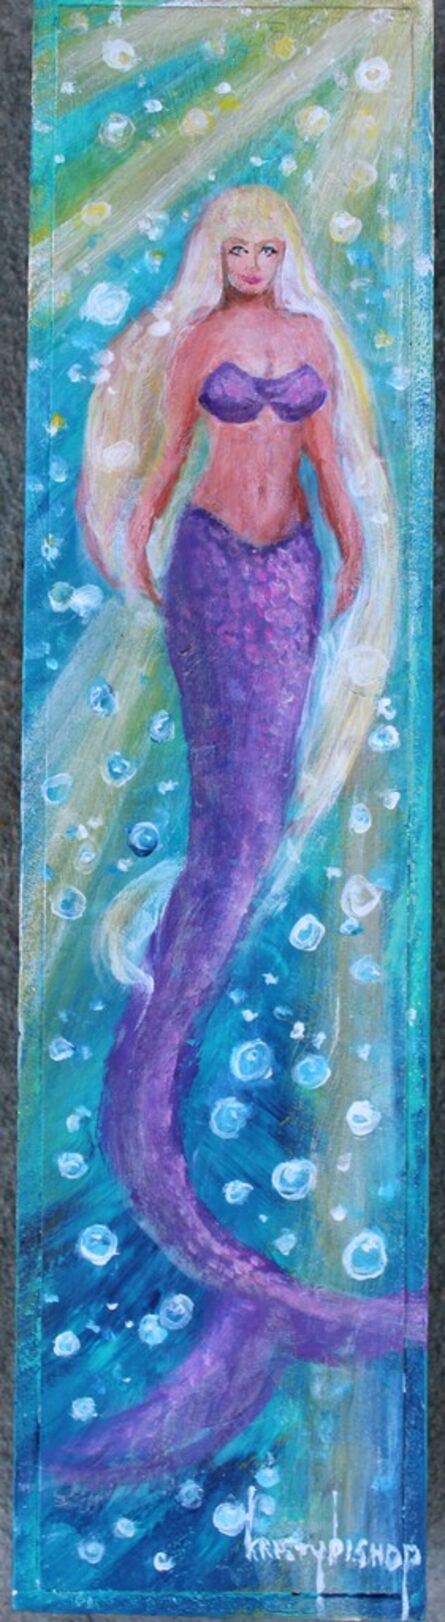 Kristy Bishop, ‘Mermaid’, 2021